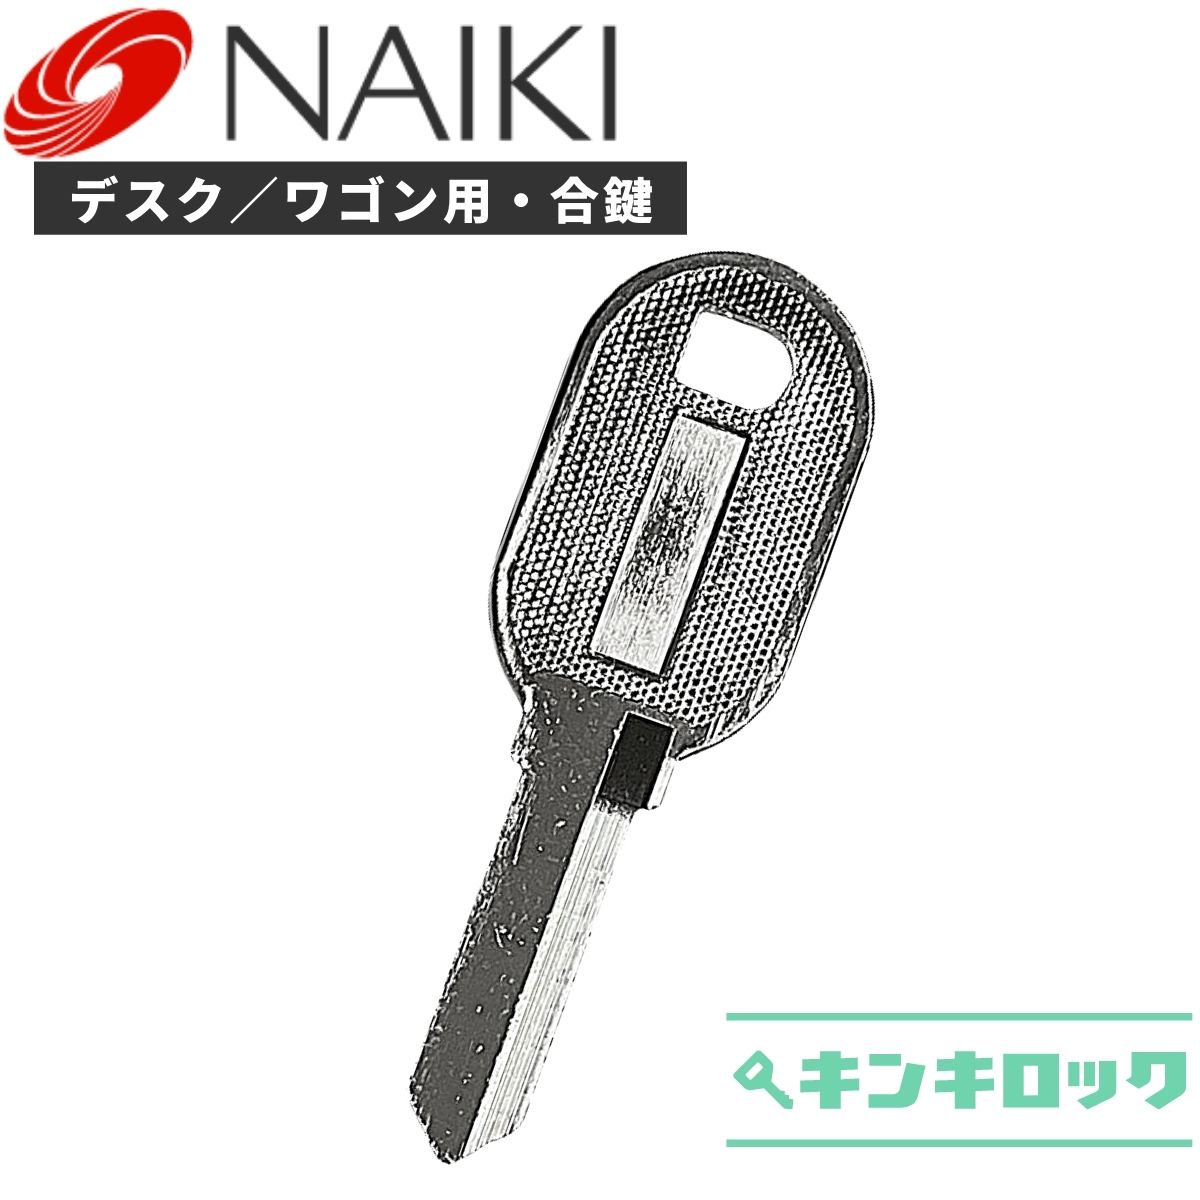 ナイキ NAIKI 鍵 机 デスク ワゴン 合鍵 合カギ カギ スペアキー C記号・E記号・V記号 